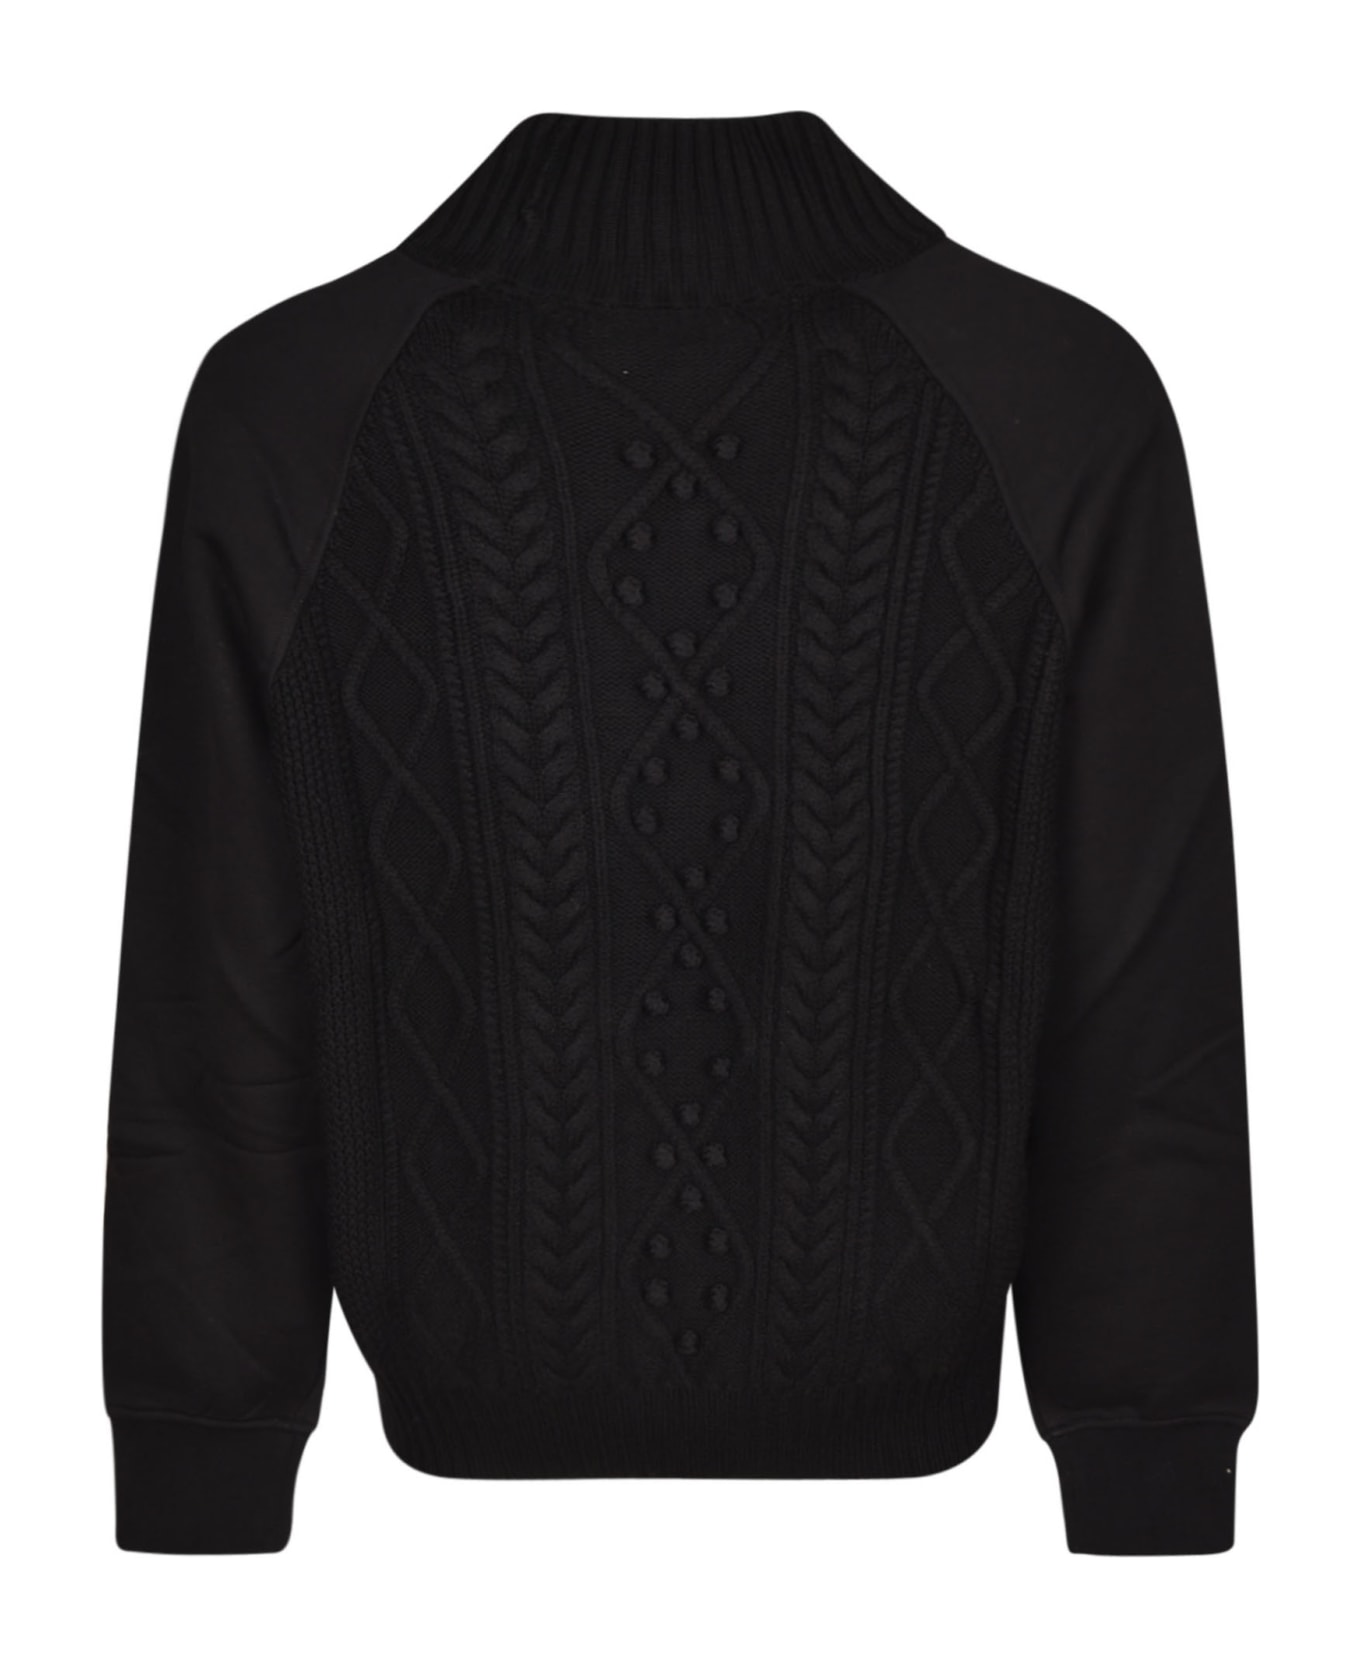 Neil Barrett Hybrid Cable Knit High Neck Sweater - Black ニットウェア